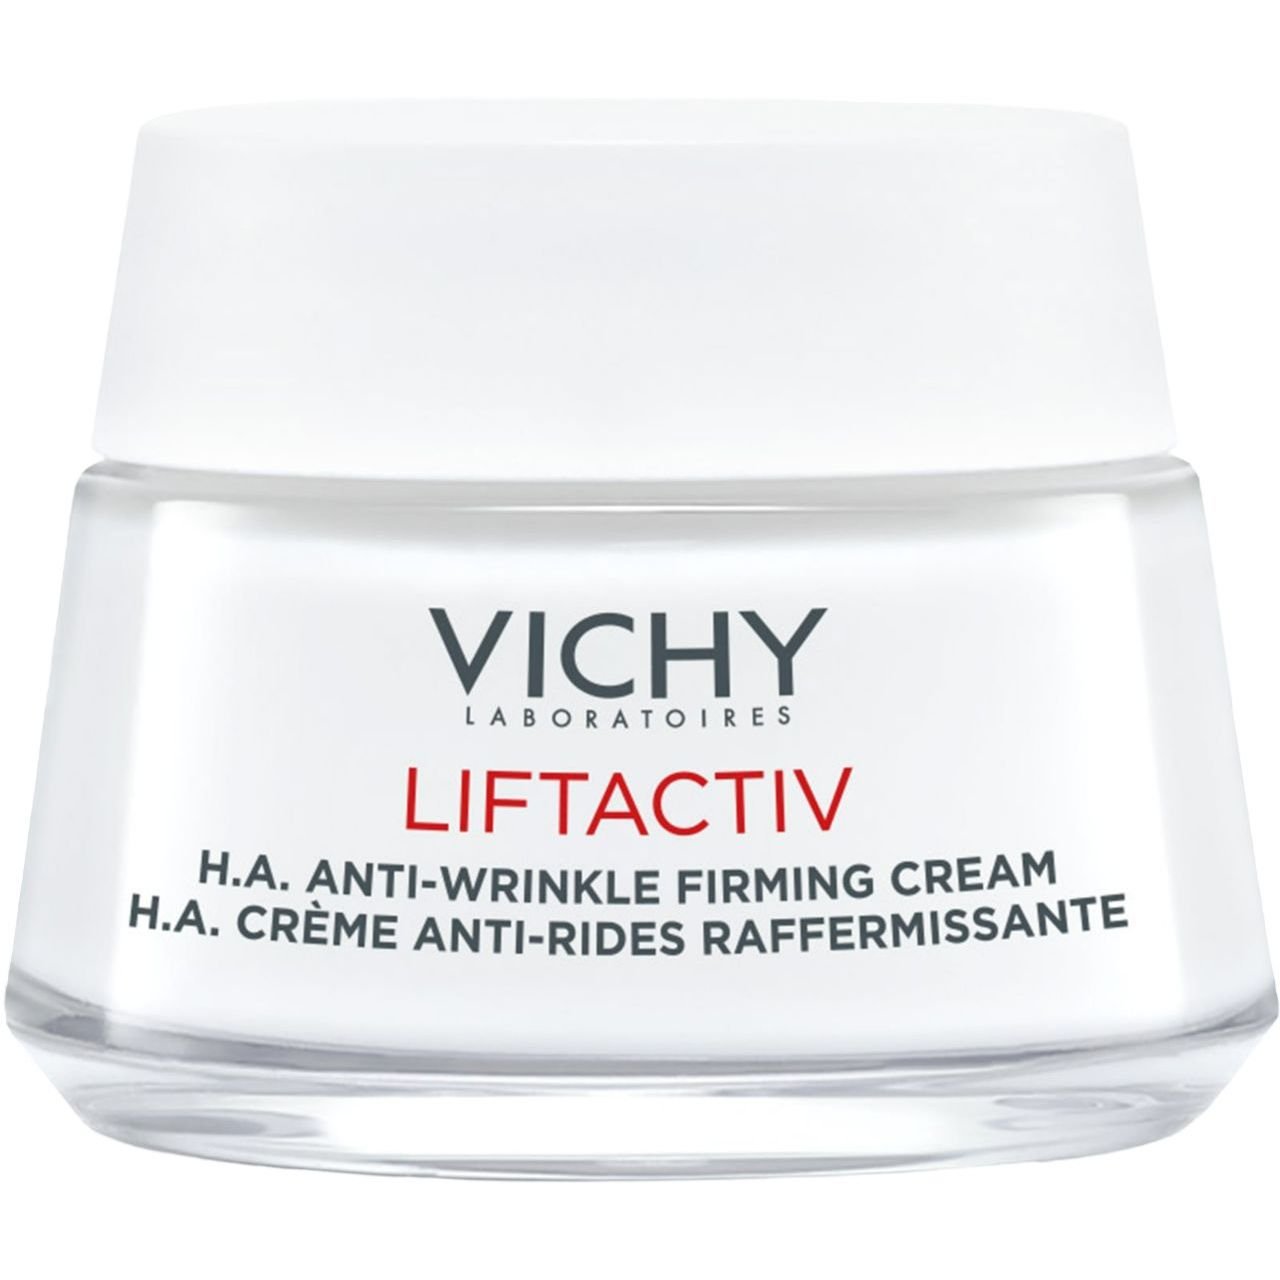 Разглаживающий крем Vichy Liftactiv H. A. с гиалуроновой кислотой для коррекции морщин для сухой кожи 50 мл - фото 2